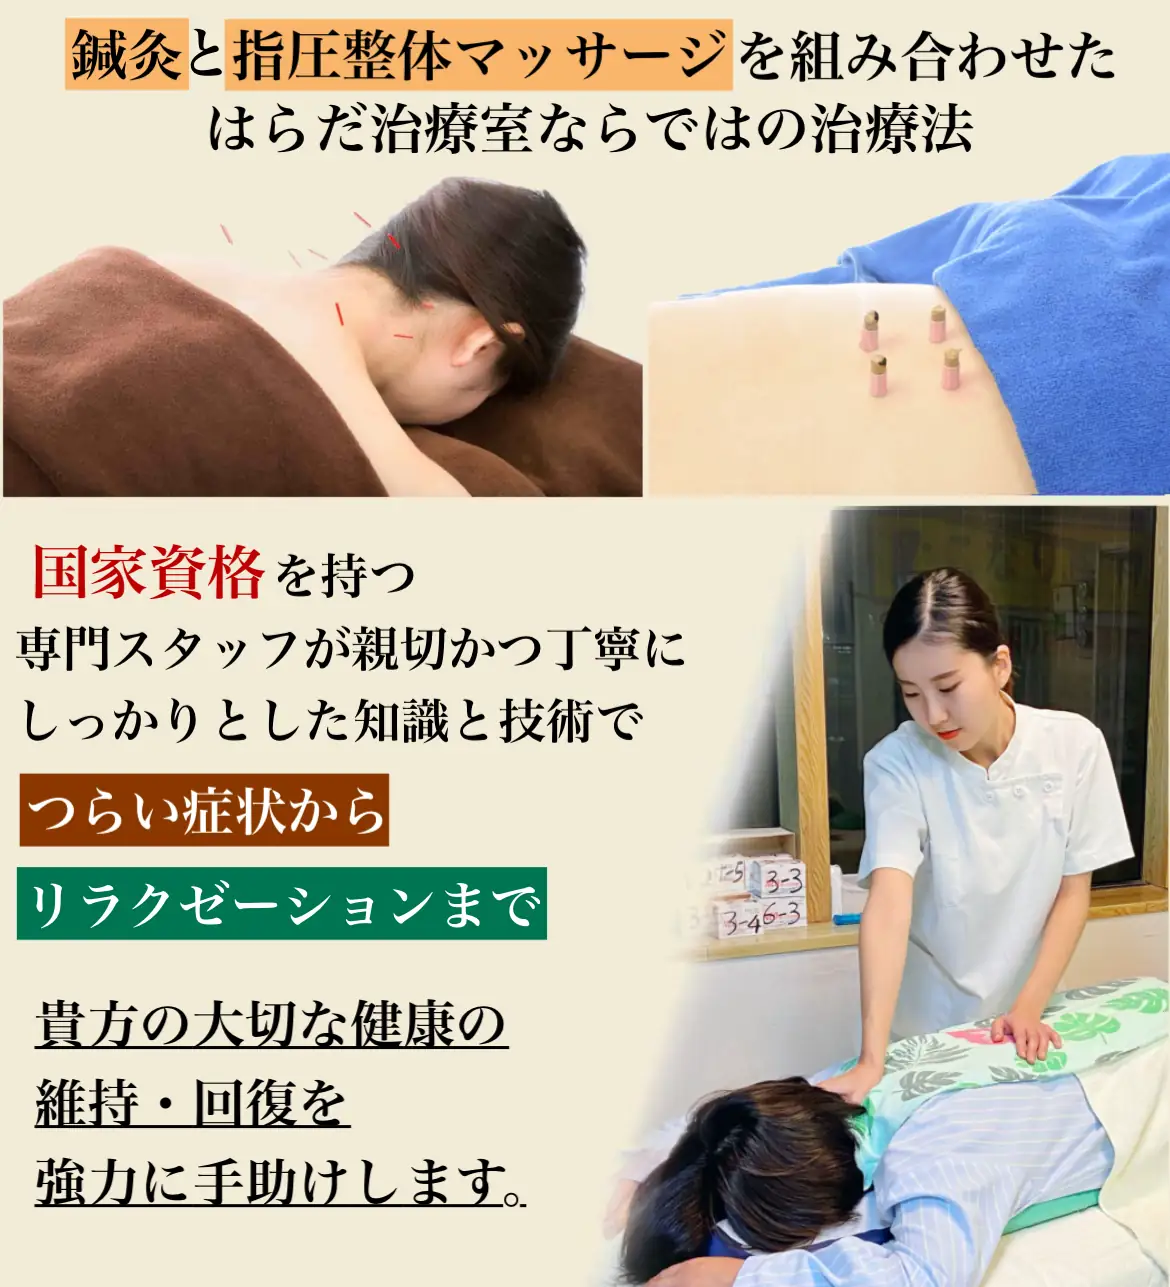 町田で本格的な鍼灸マッサージなら『はらだ指圧整体マッサージ治療室』